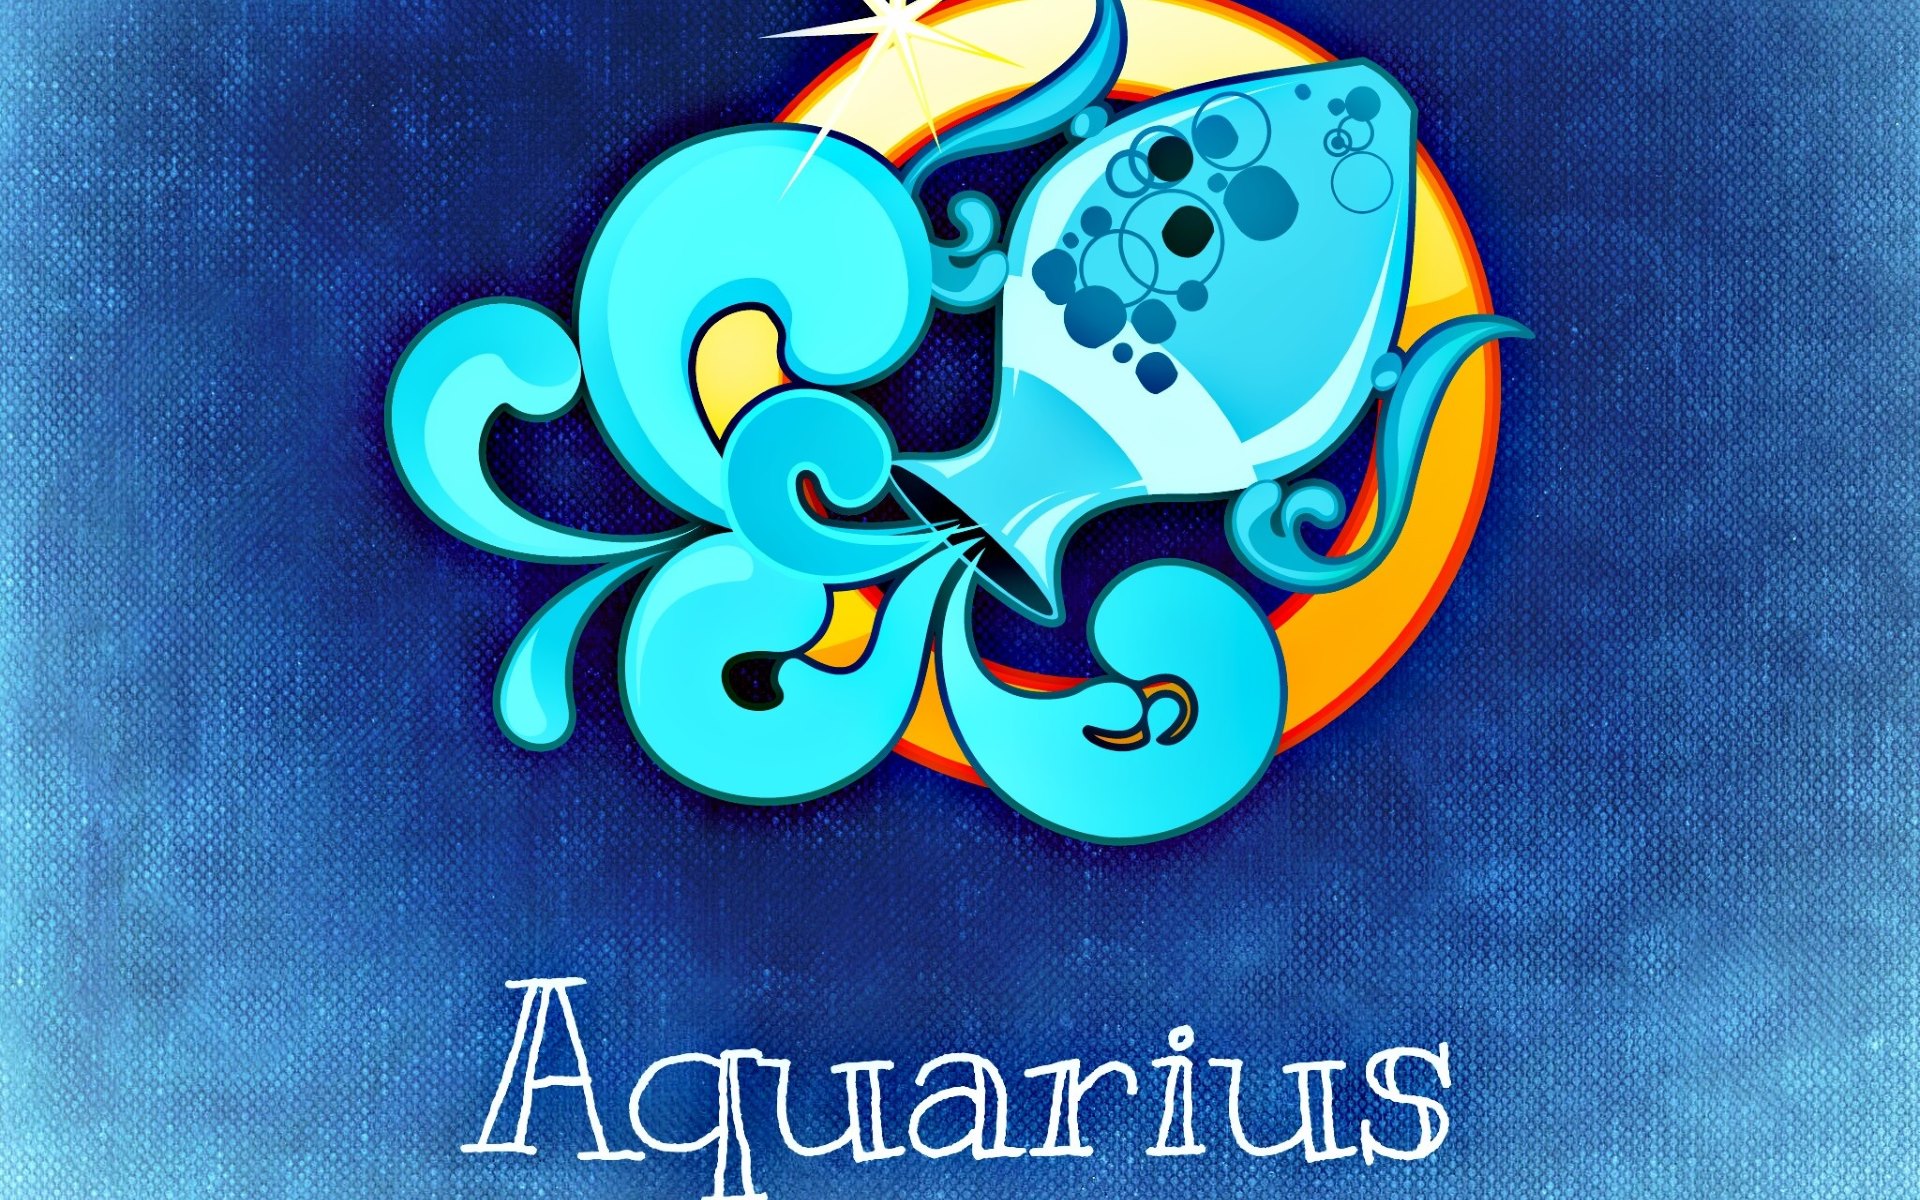 Horoscope - Aquarius by Alexas_Fotos